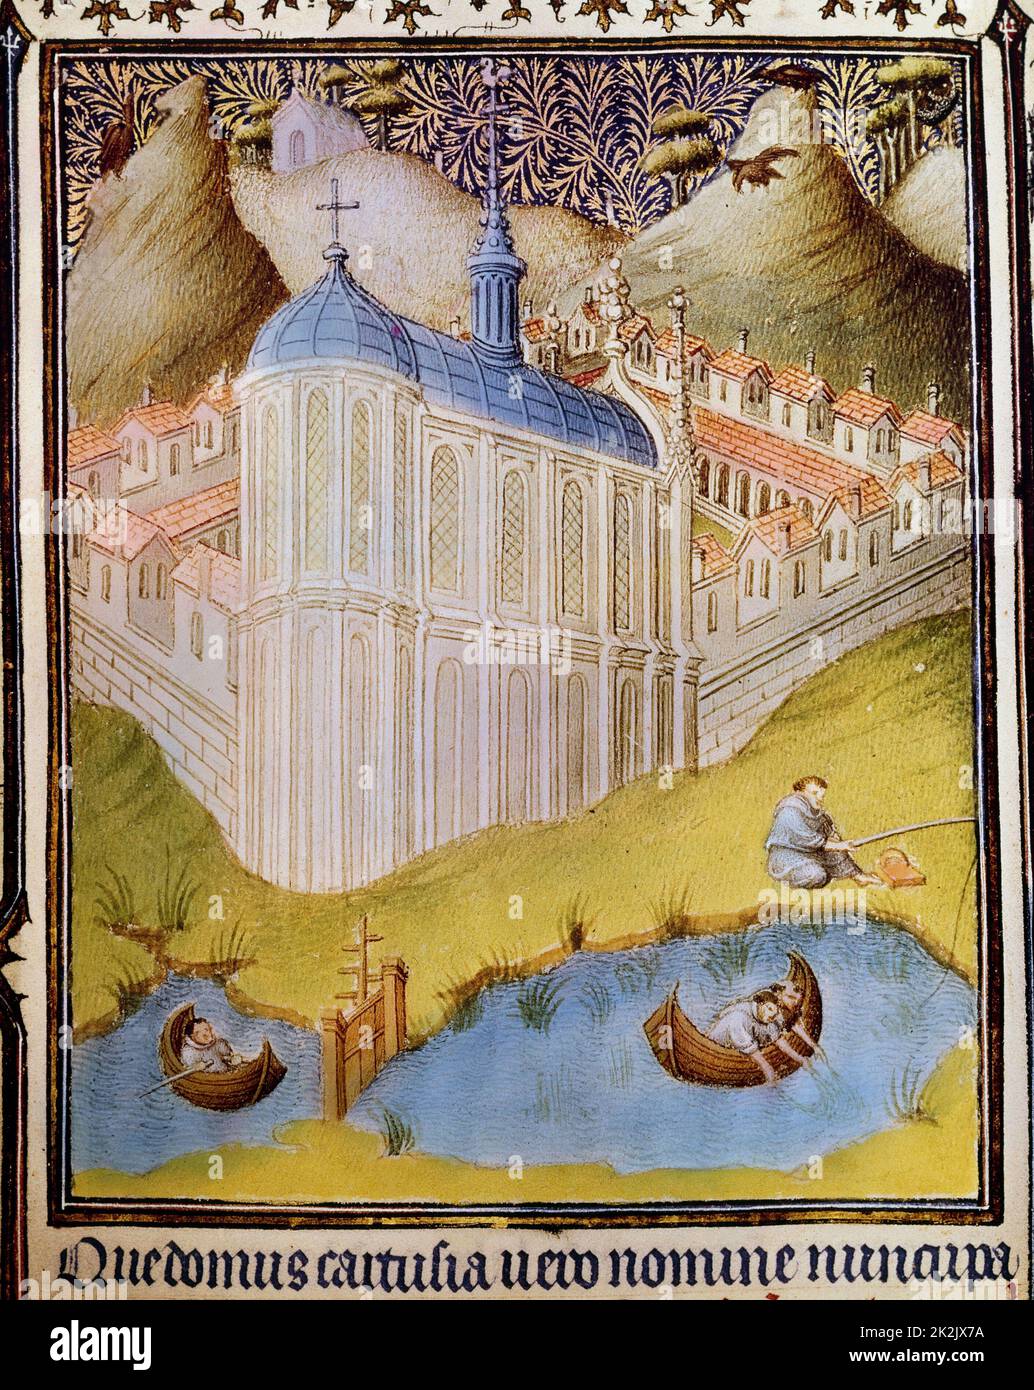 Les moines chartreusiens pêchent et pêchent dans les étangs à poissons du monastère, Chartreuse, fondée par St Bruno de Cologne (11th siècle). Détail des belles heures du duc Jean de Berry. manuscrit du 15th siècle Banque D'Images